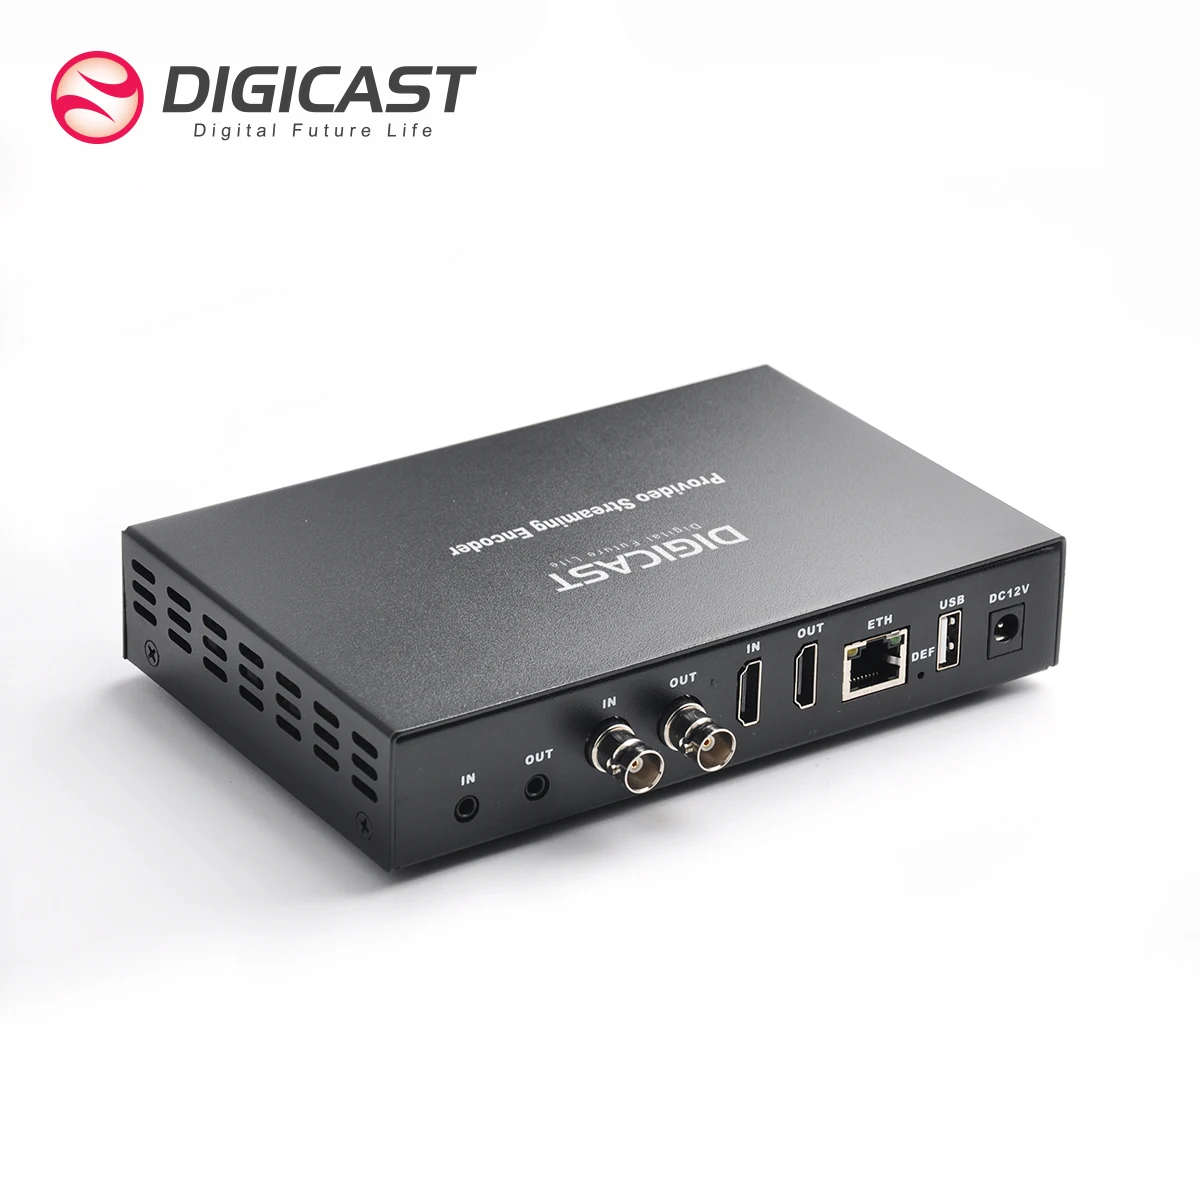 

DMB-8900AU Plus 2 Channels NDI 4K HEVC Streaming Encoder SDI SRT Encoder Decoder H.265 HD UHD Encoders USB Video Recording